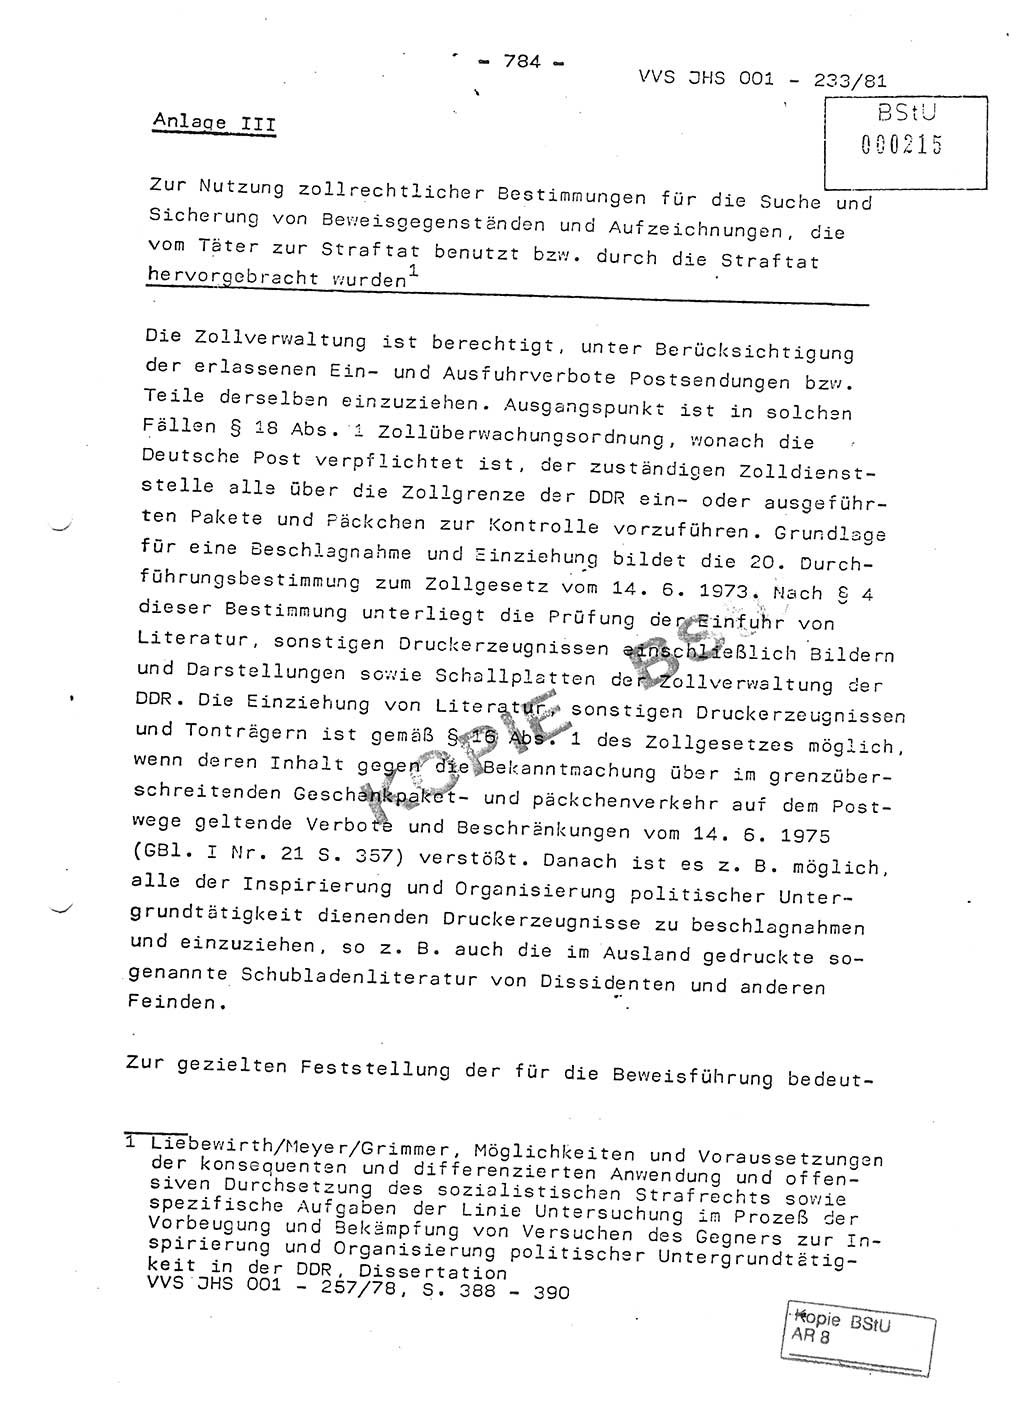 Dissertation Oberstleutnant Horst Zank (JHS), Oberstleutnant Dr. Karl-Heinz Knoblauch (JHS), Oberstleutnant Gustav-Adolf Kowalewski (HA Ⅸ), Oberstleutnant Wolfgang Plötner (HA Ⅸ), Ministerium für Staatssicherheit (MfS) [Deutsche Demokratische Republik (DDR)], Juristische Hochschule (JHS), Vertrauliche Verschlußsache (VVS) o001-233/81, Potsdam 1981, Blatt 784 (Diss. MfS DDR JHS VVS o001-233/81 1981, Bl. 784)